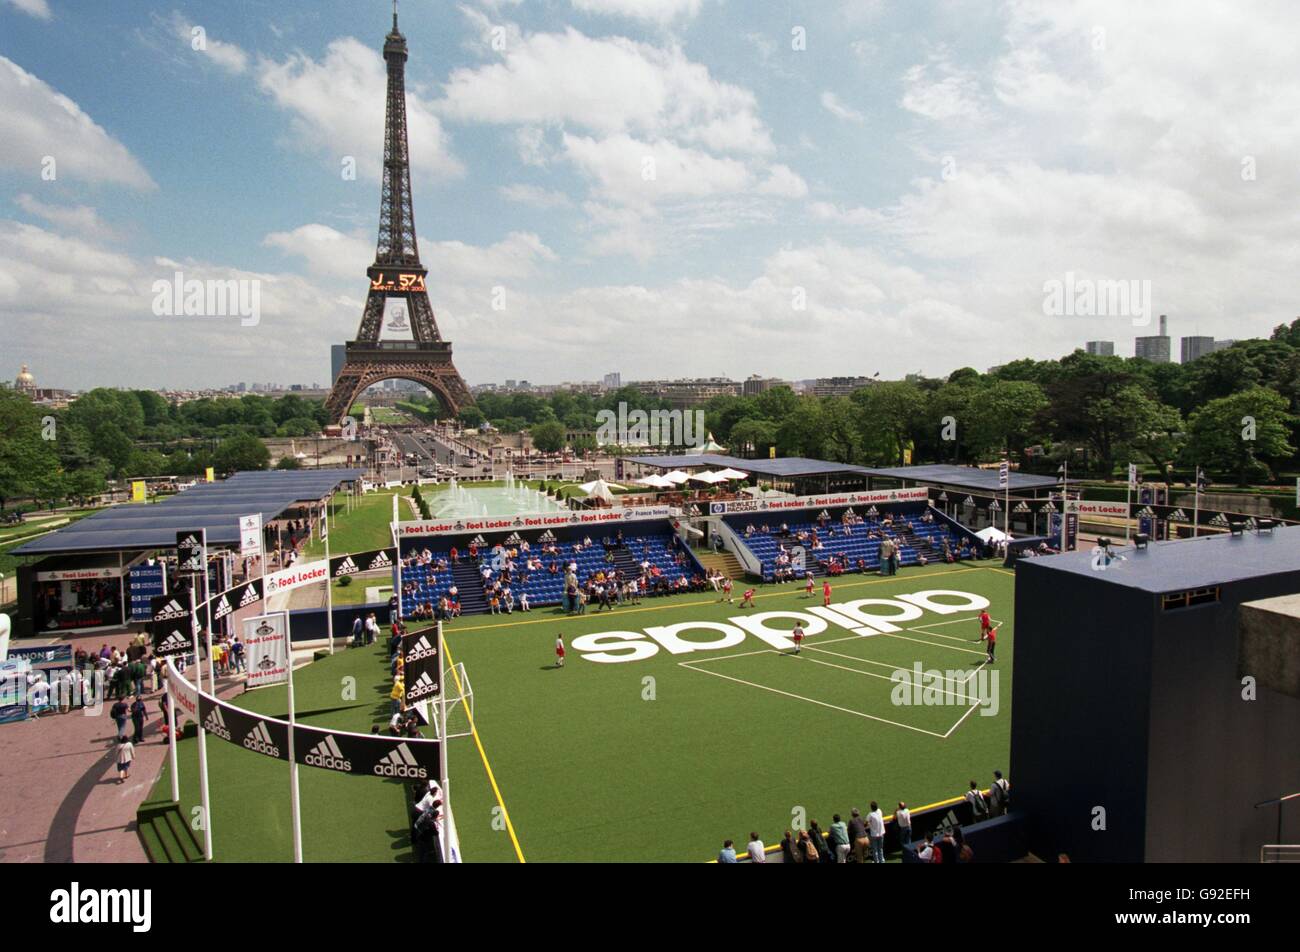 Fútbol - Copa Mundial Francia 98 - Fiesta de la calle. El pueblo de Adidas  de Trocadero, París Fotografía de stock - Alamy